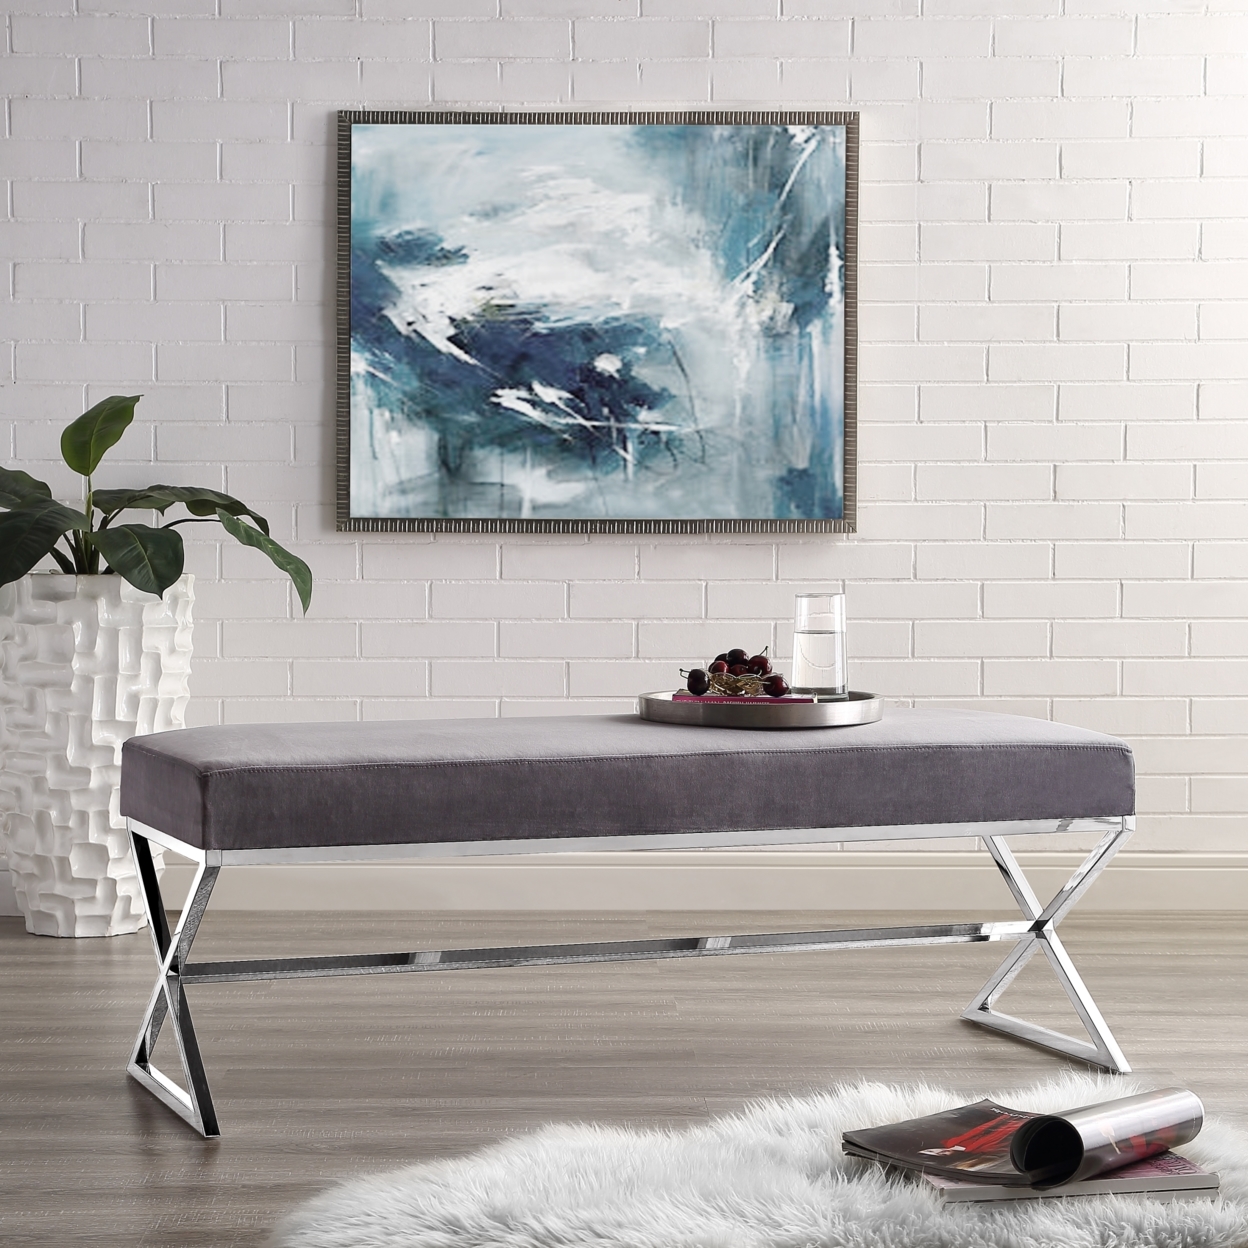 Liam Velvet Upholstered Bench-Stainless Steel Legs-Living-room, Entryway, Bedroom-Inspired Home - Navy